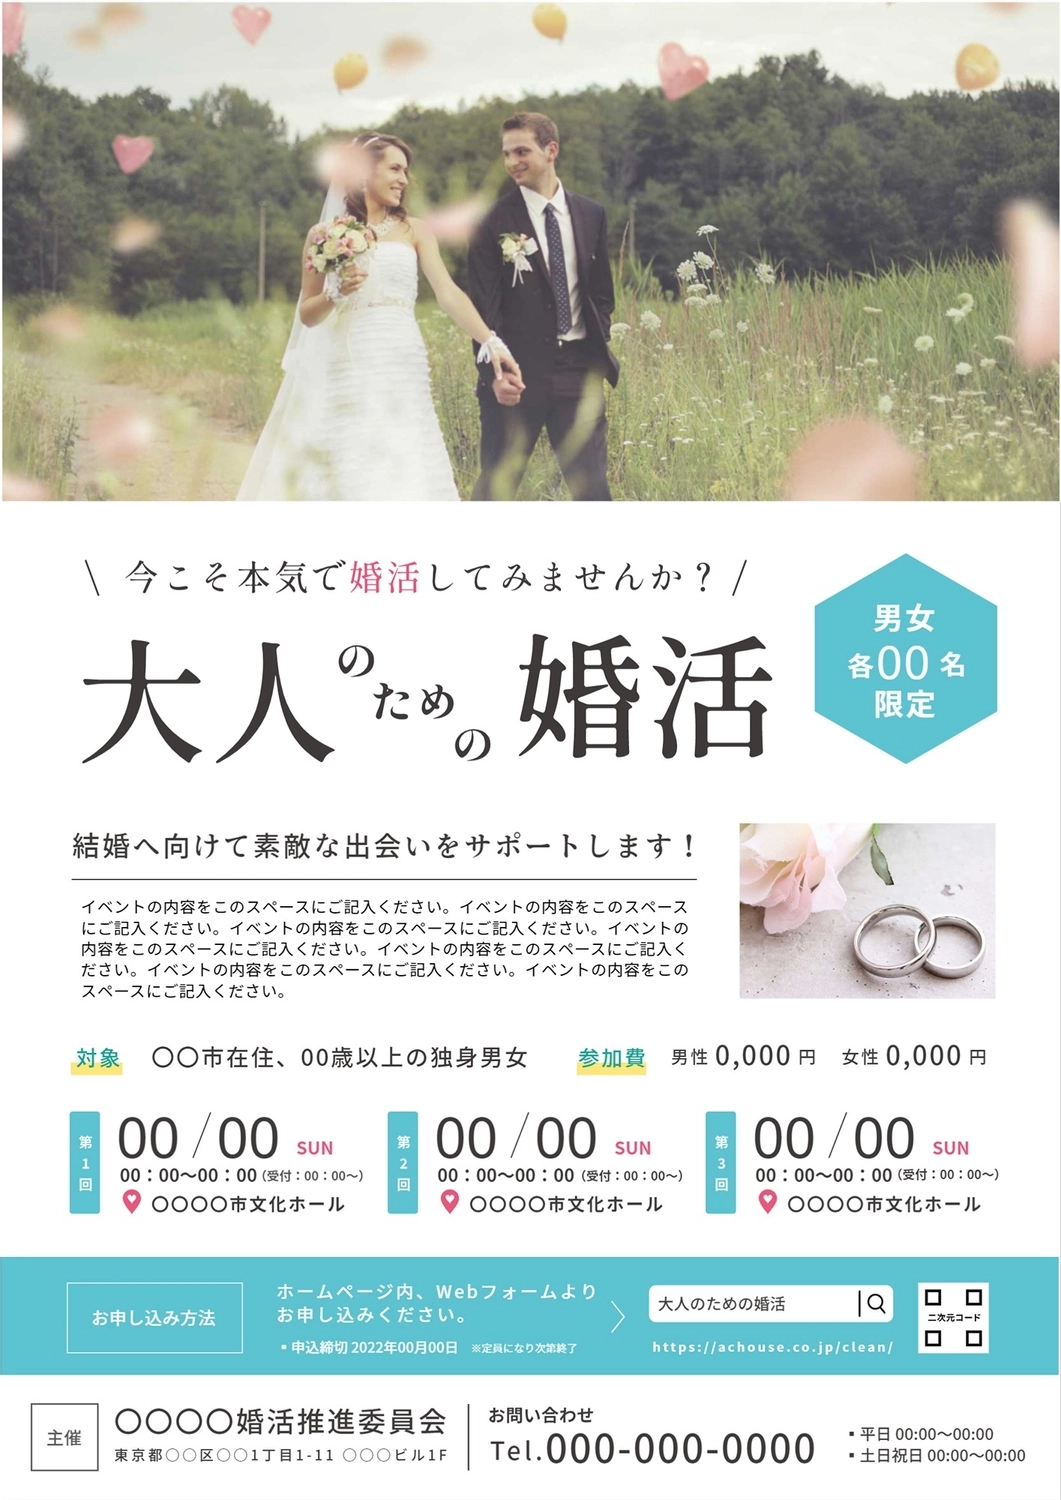 外国人カップル写真の婚活チラシ, vertical, Horizontal writing, Photo, Flyer template